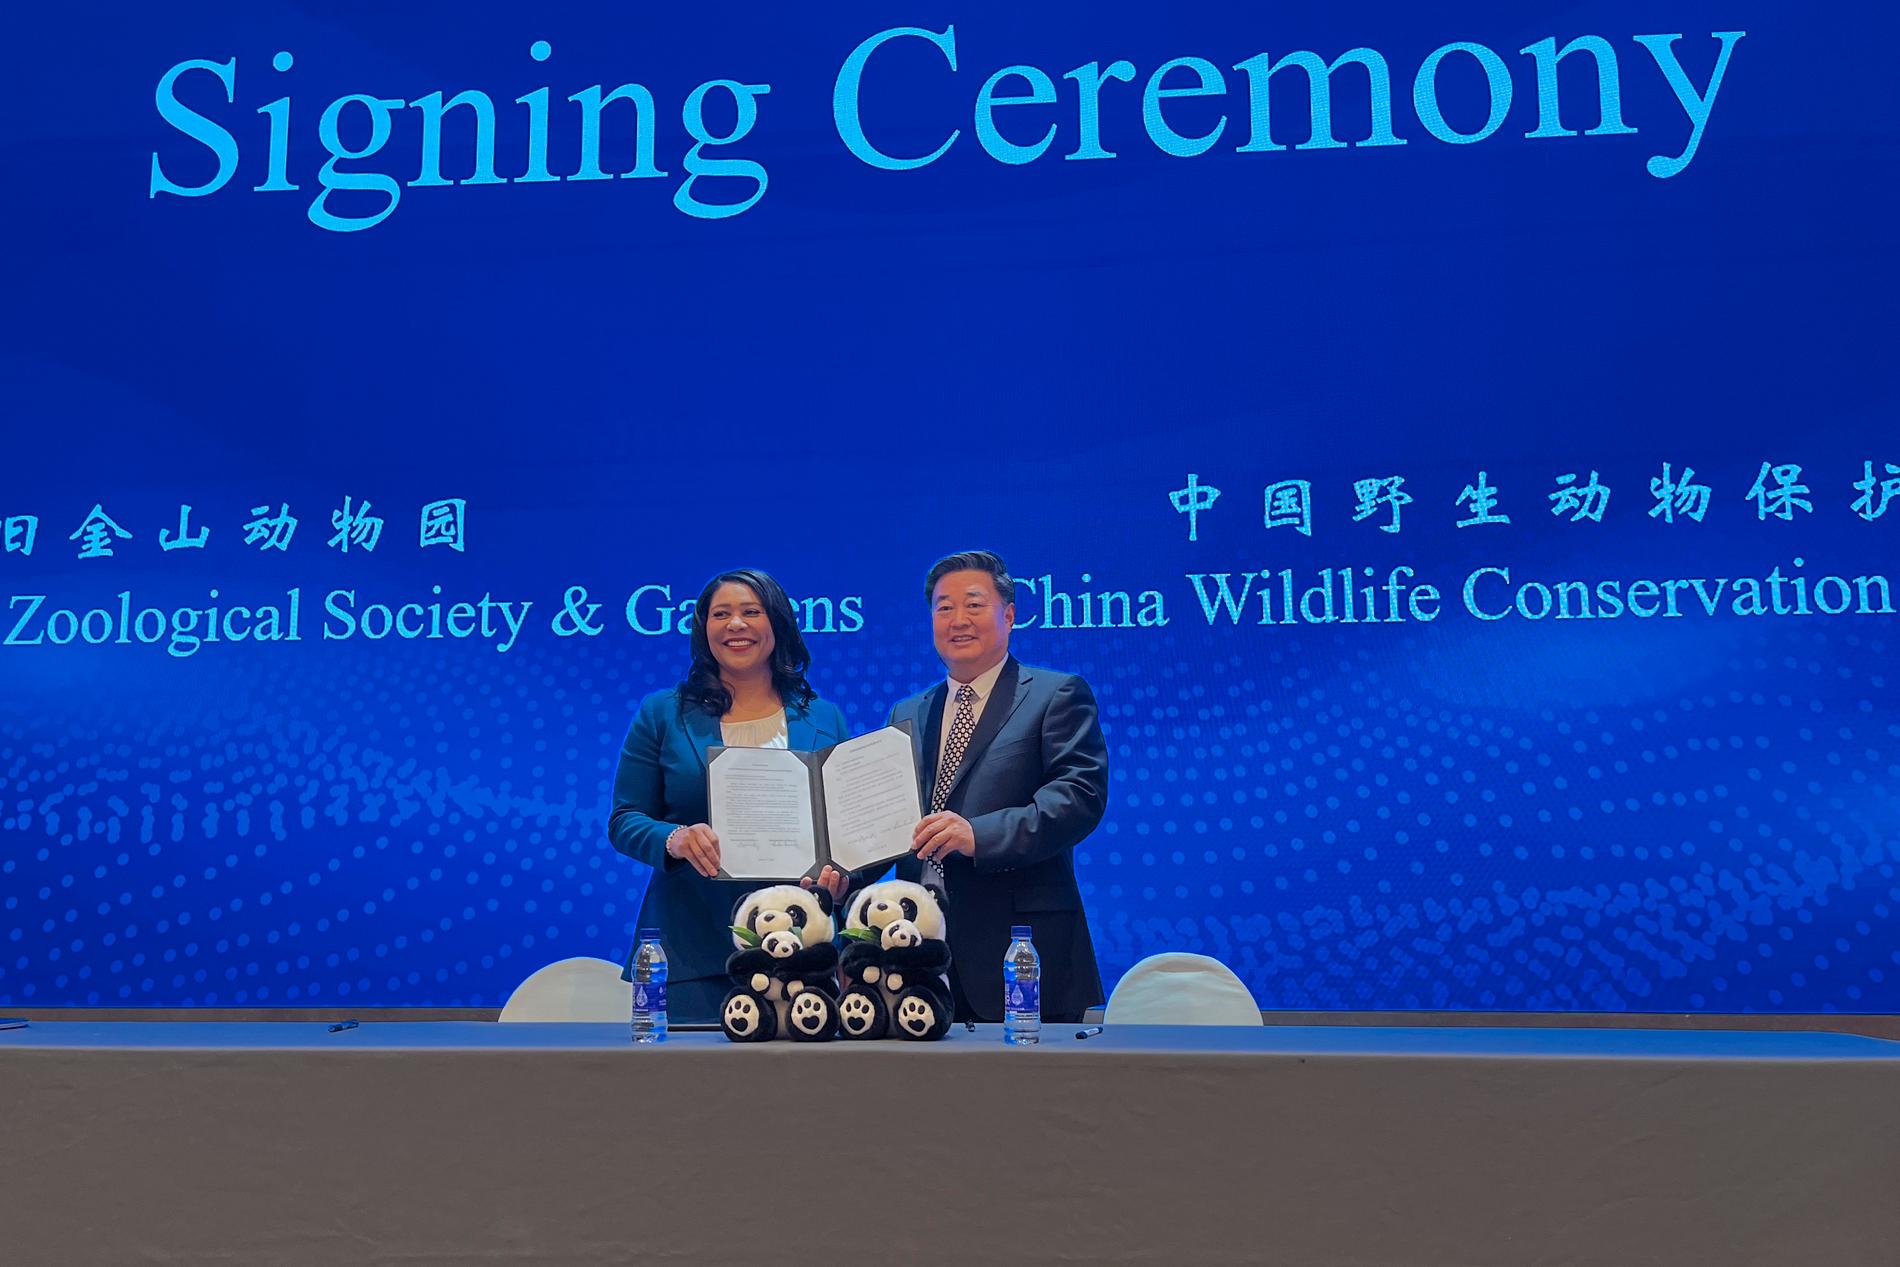 San Franciscos borgmästare London Breed och Wu Minglu, generalsekreterare för China Wildlife Conservation Association, under en ceremoni i Peking.